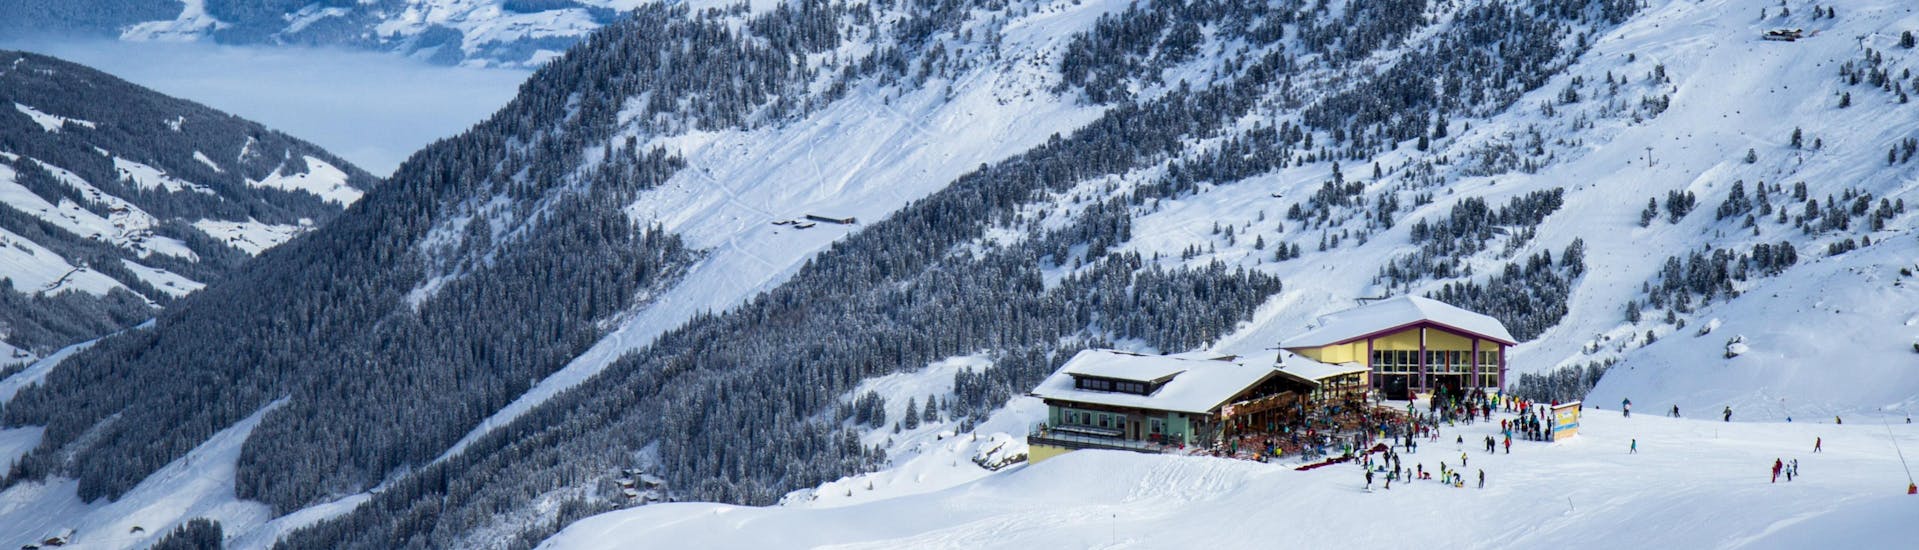 Blick auf das Skigebiet Kaltenbach im Hochzillertal, wo örtliche Skischulen ihre Skikurse anbieten.